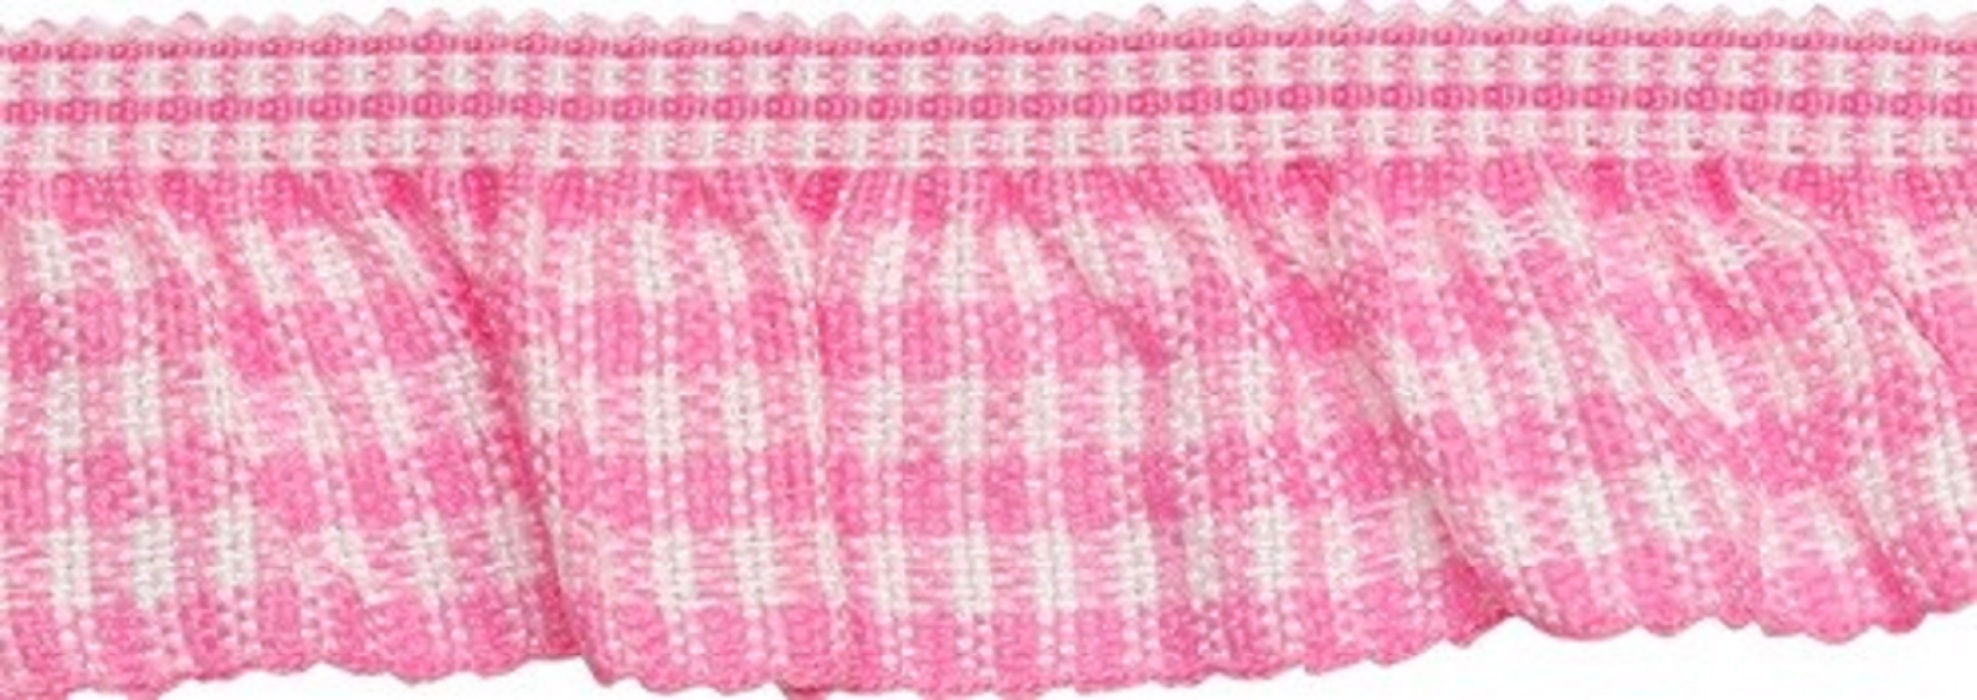 фото Тесьма-рюш эластичная односторонняя, цвет: розовый, 20 мм x 22,86 м, арт. 1as-220 китай